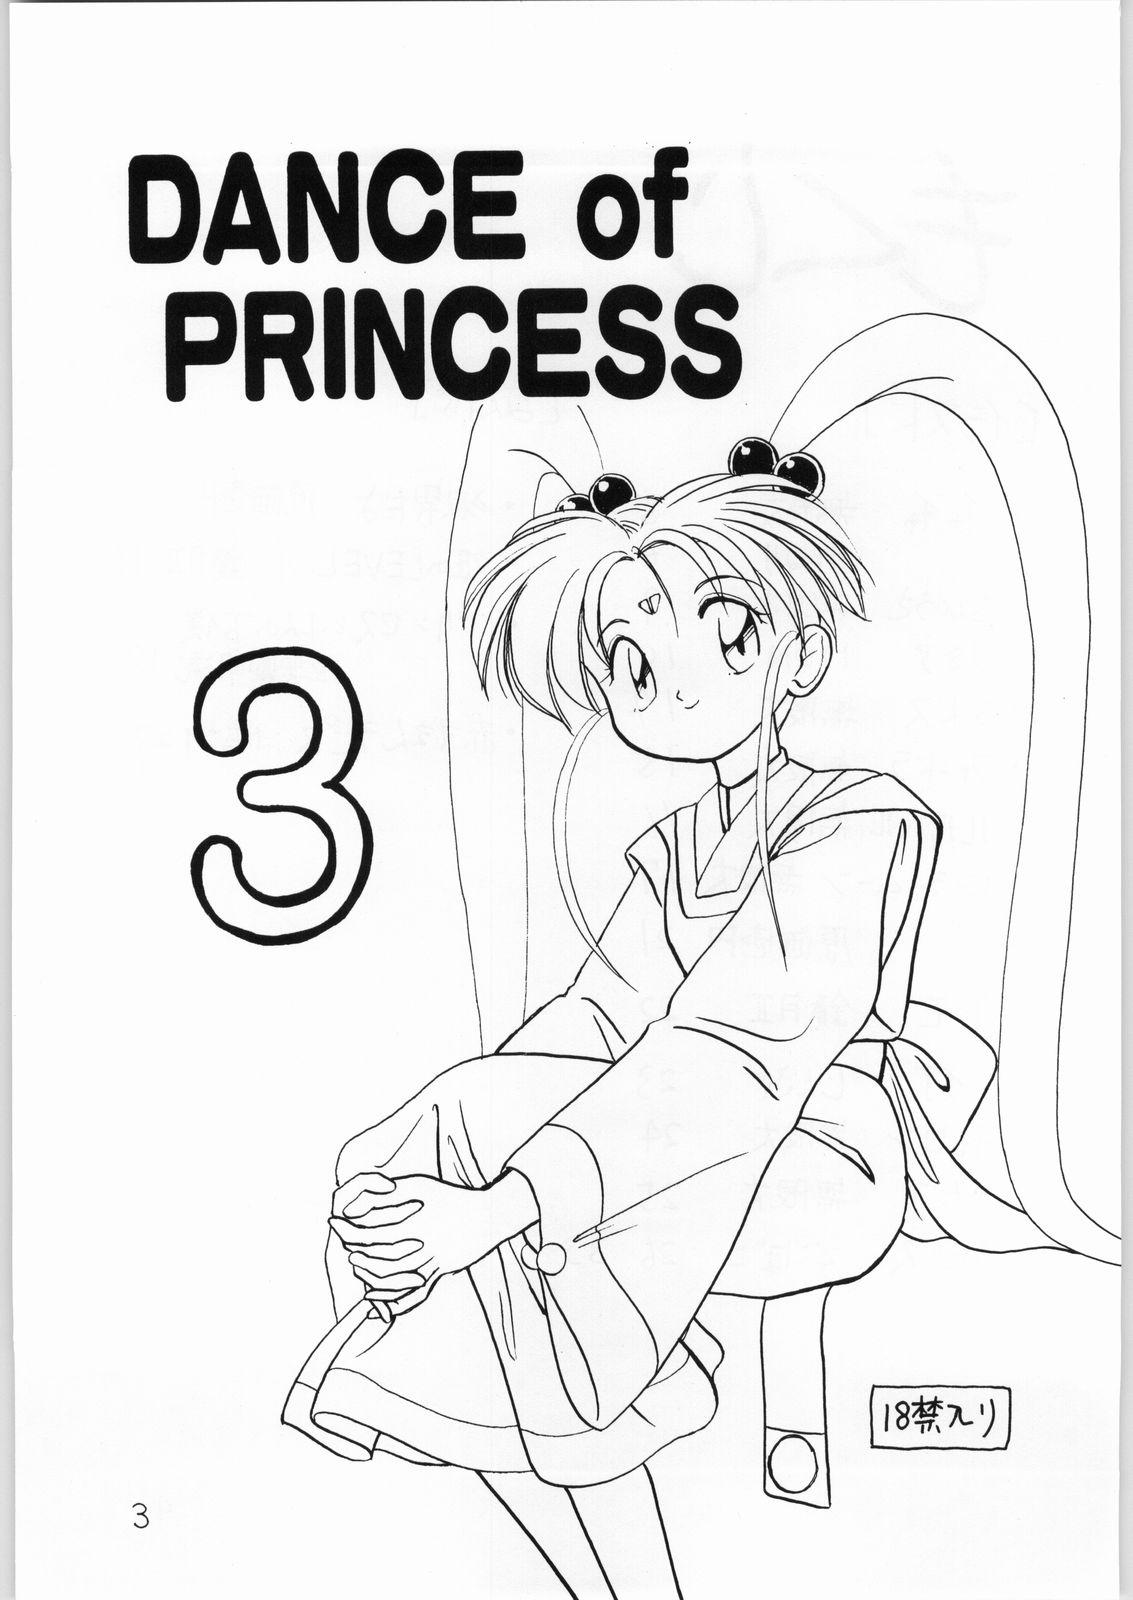 Fudendo Dance of Princess 3 - Sailor moon Tenchi muyo Akazukin cha cha Minky momo Ng knight lamune and 40 Peituda - Page 2